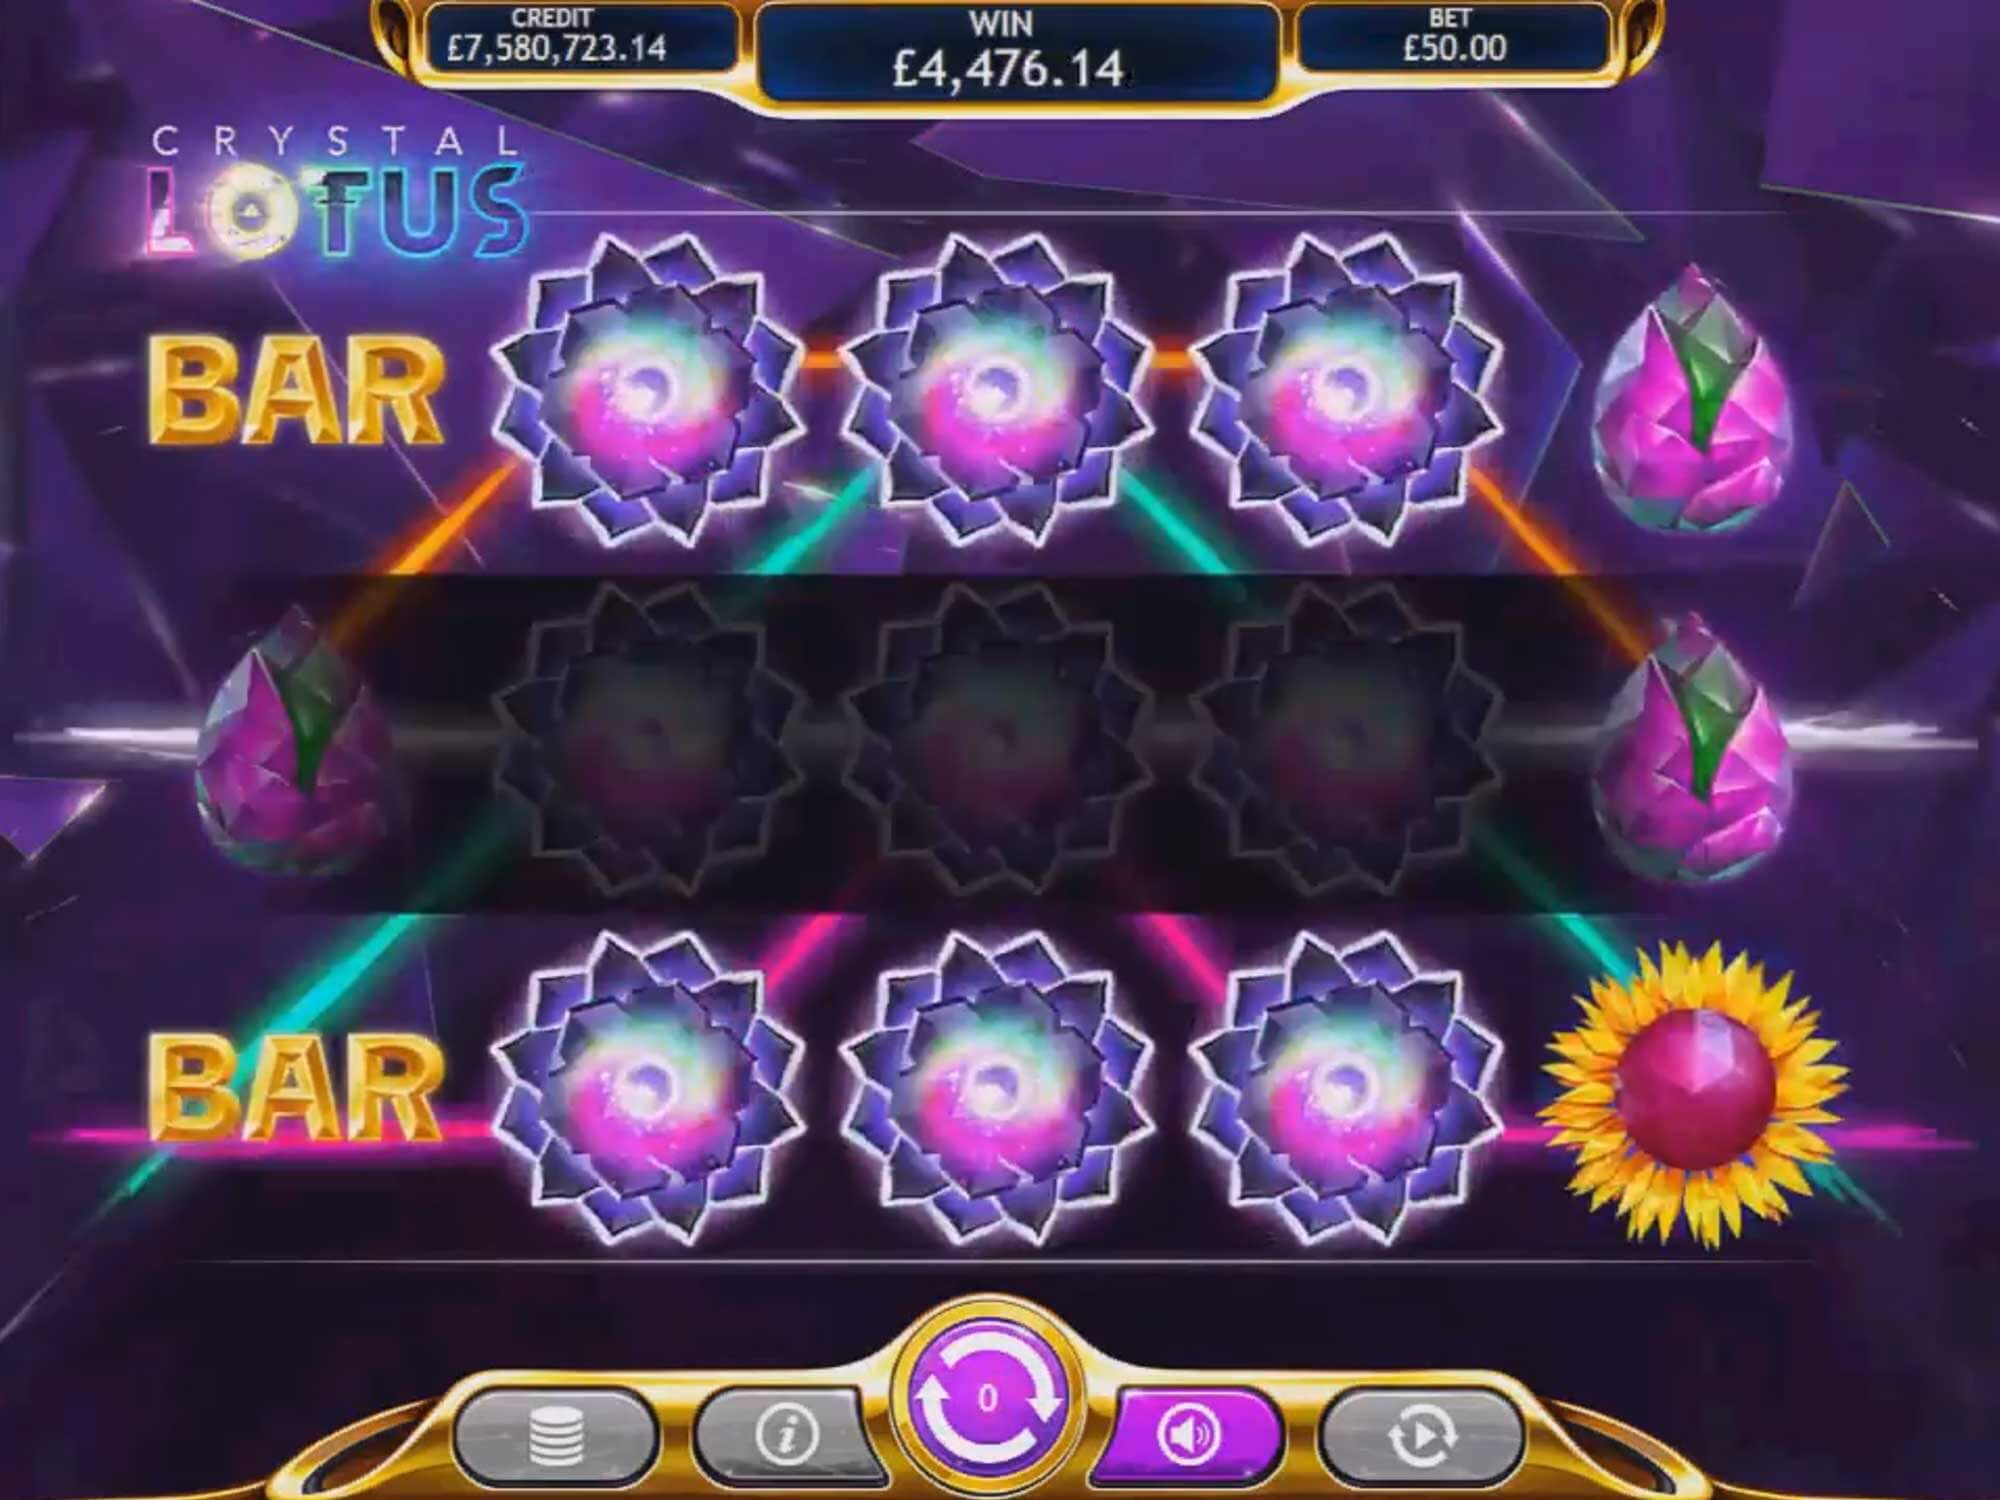 Crystal Lotus Slot Bonus